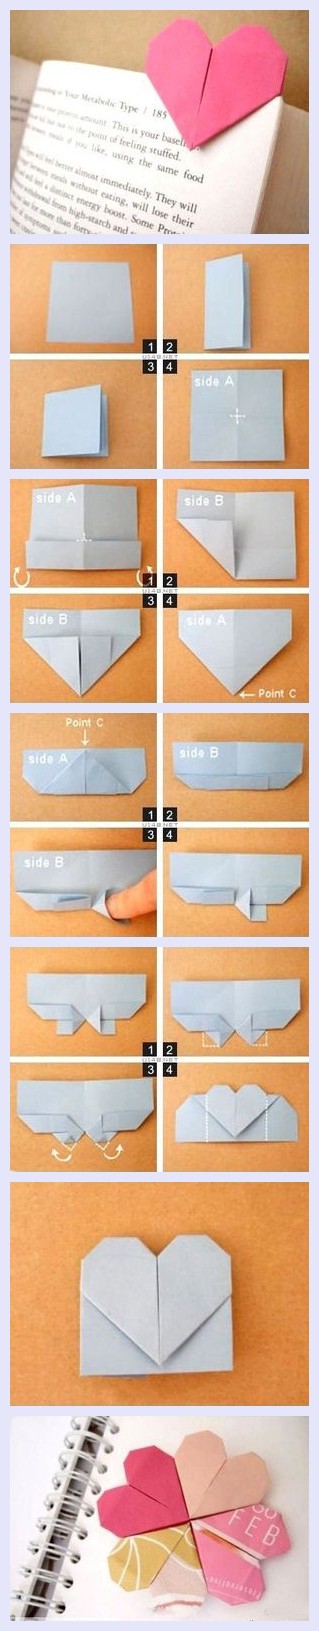 制作起来很方便,只需要一张正方形的彩纸,就可以折出这个爱心书签